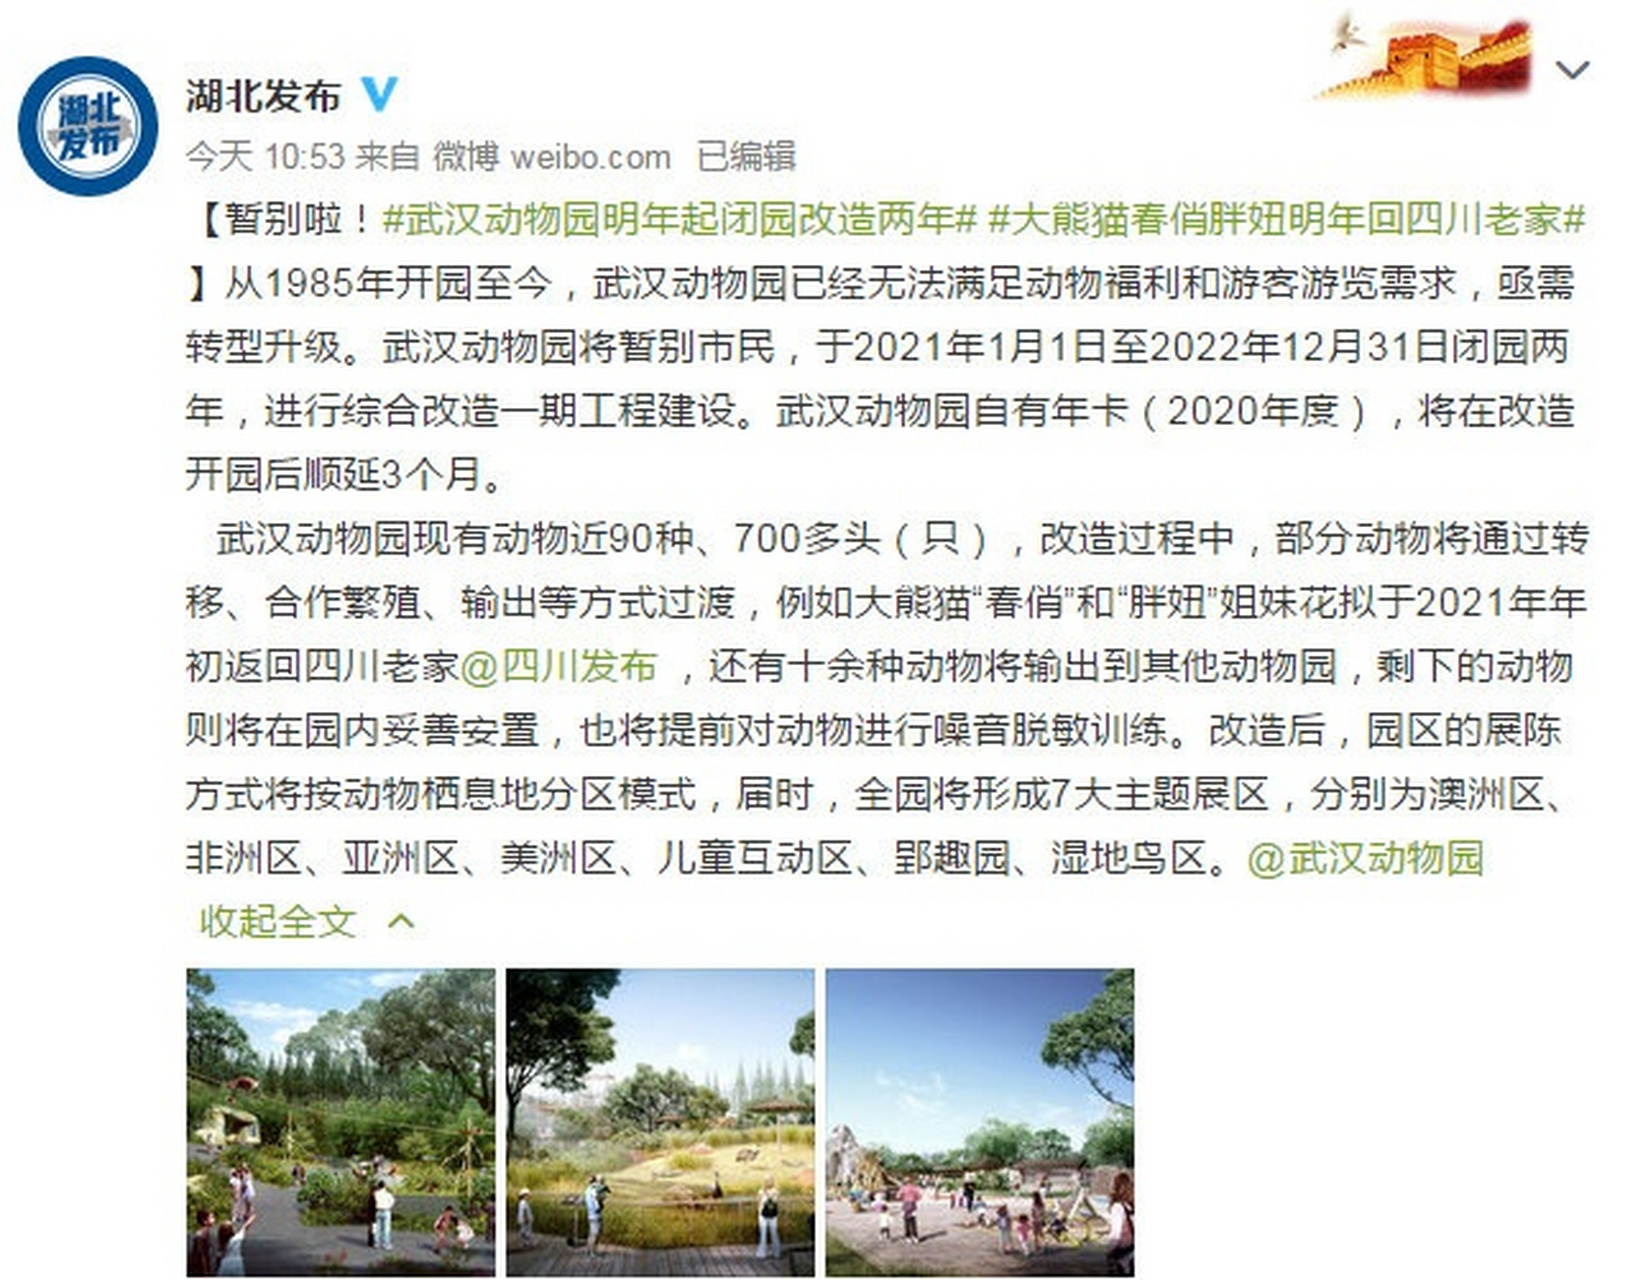 【武汉动物园明年起闭园改造两年 准备去玩的赶最后两周了】近日,据